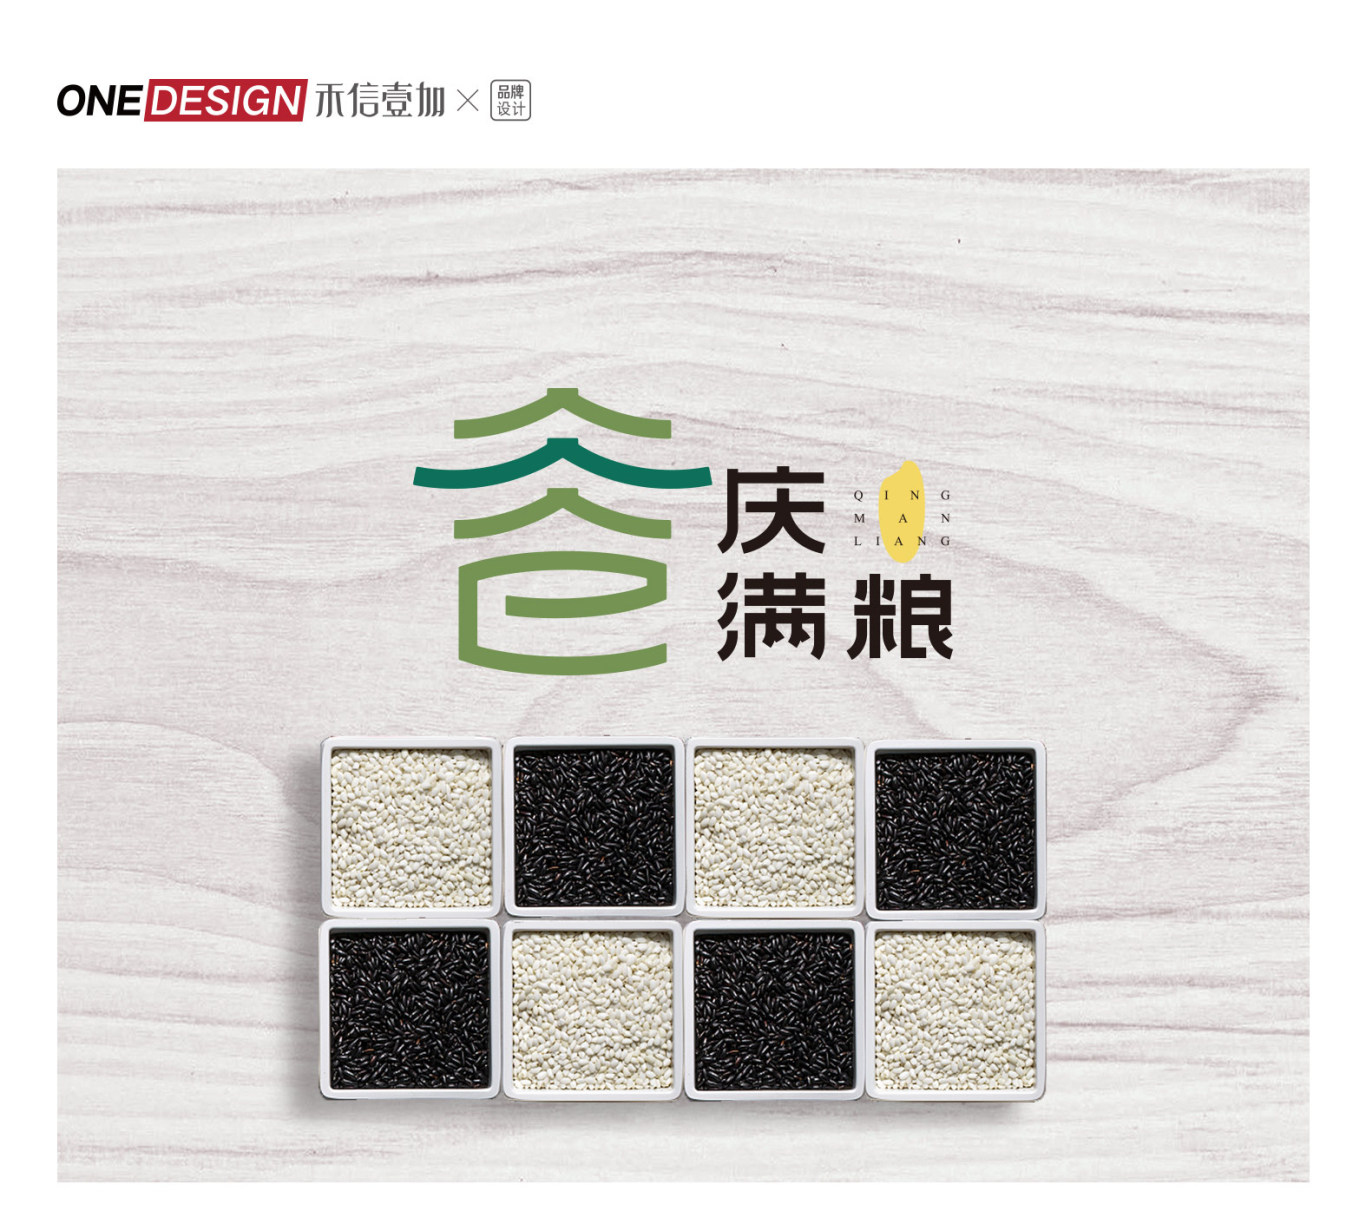 重慶《慶滿糧》農業科技發展有限公司LOGO設計圖1